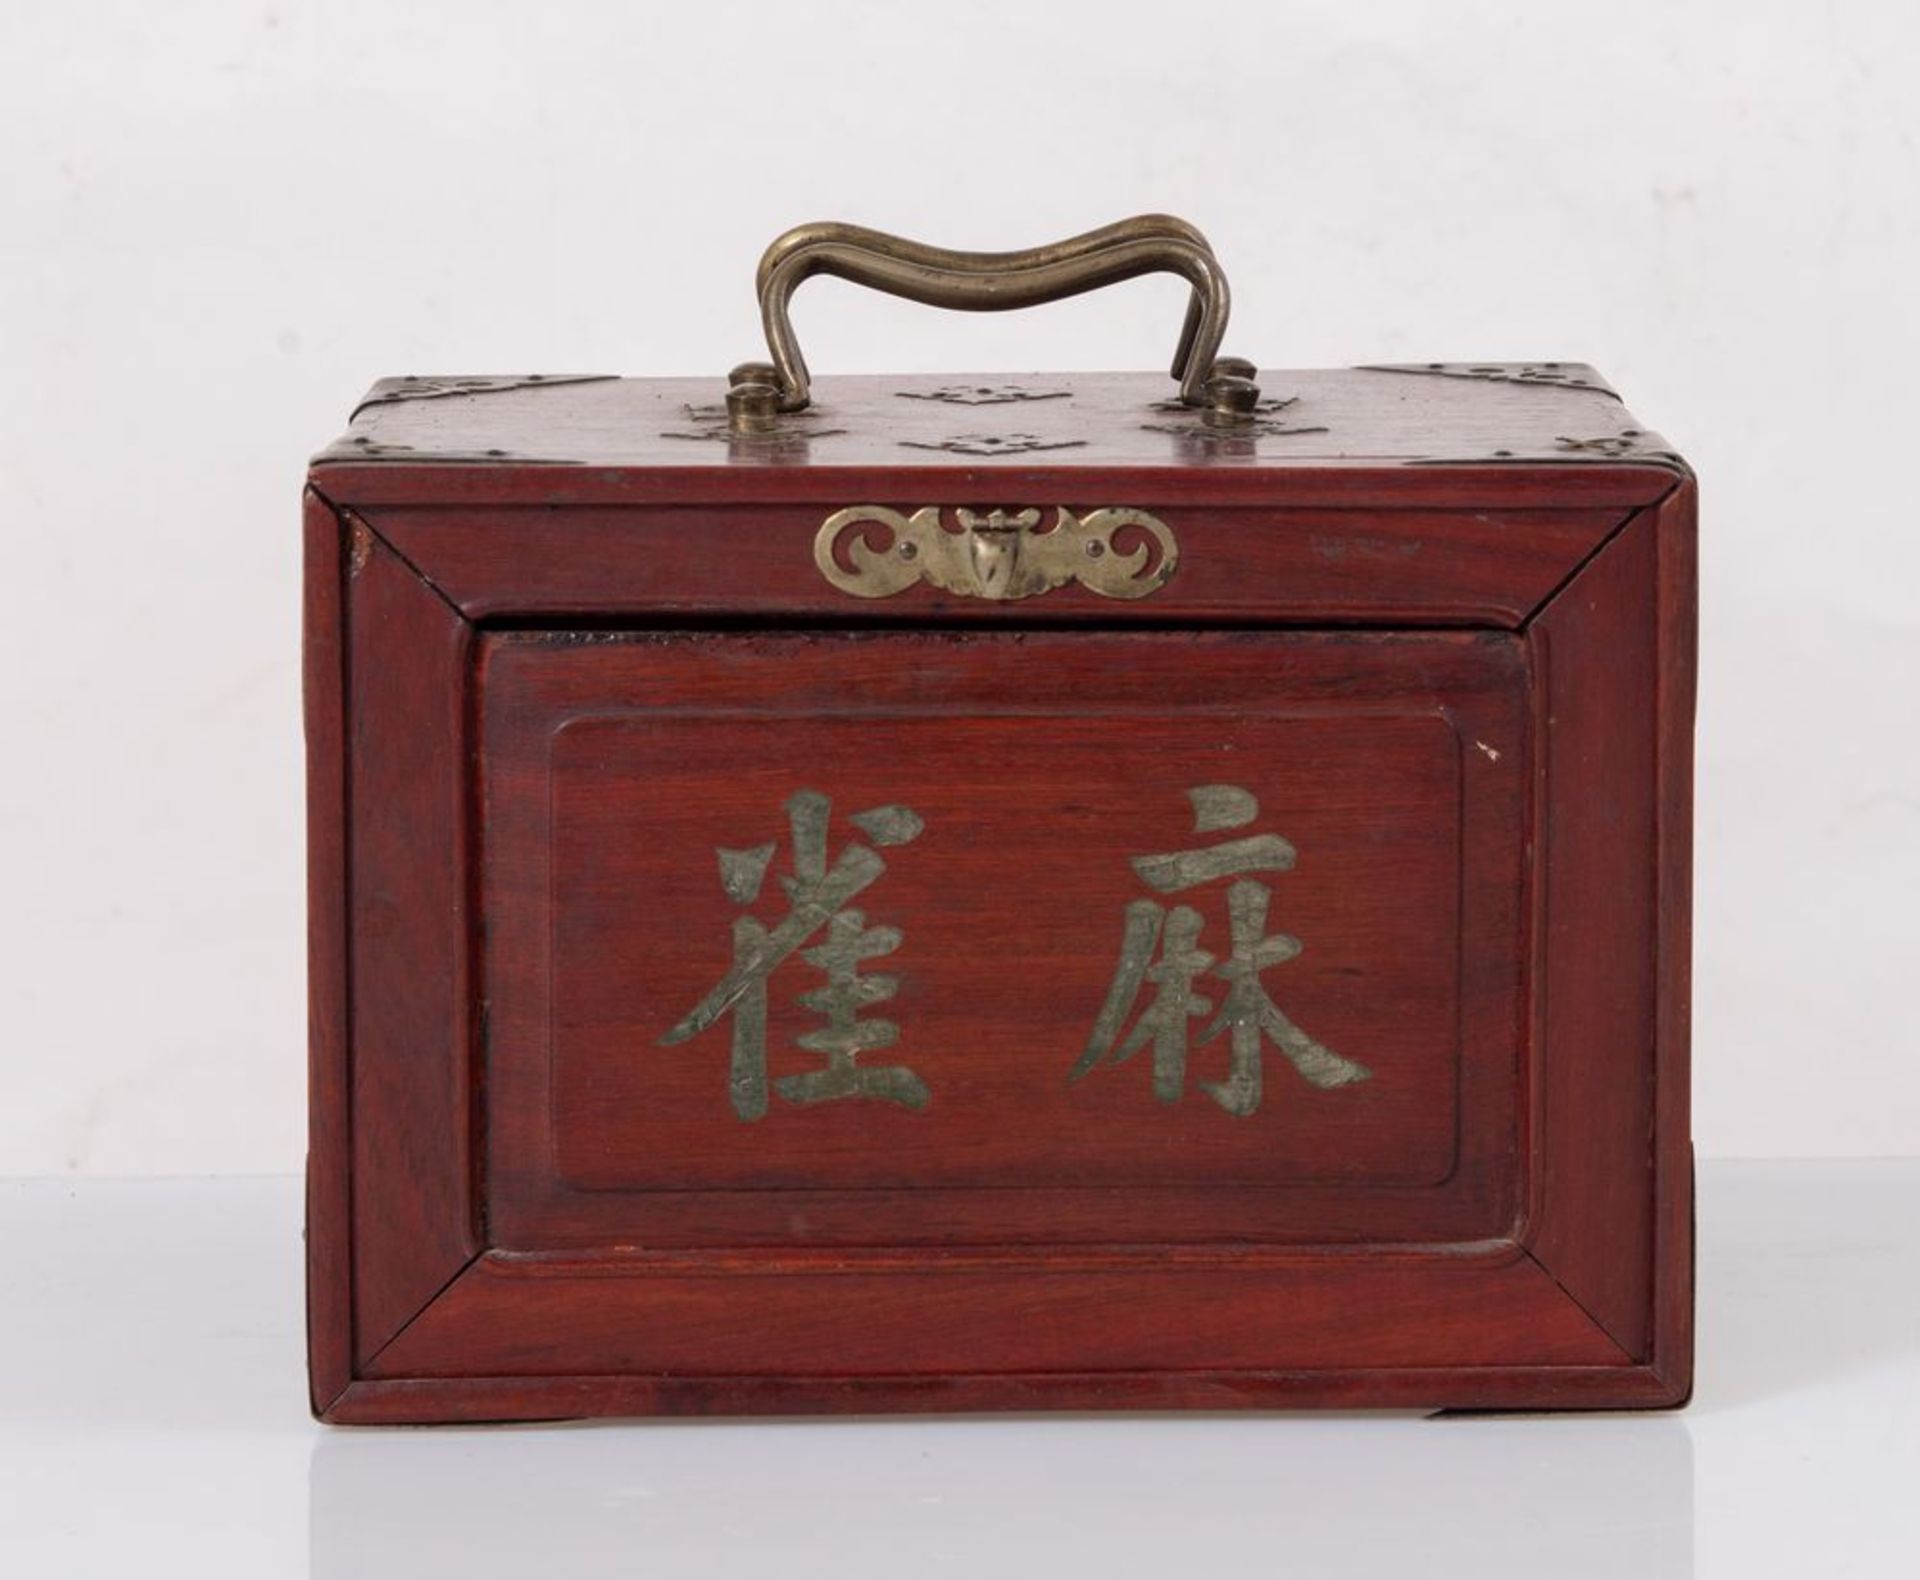 Scatola contenente gioco del MAH JONG in legno con applicazioni in bronzo. Pedine in legno di bamboo - Bild 4 aus 5